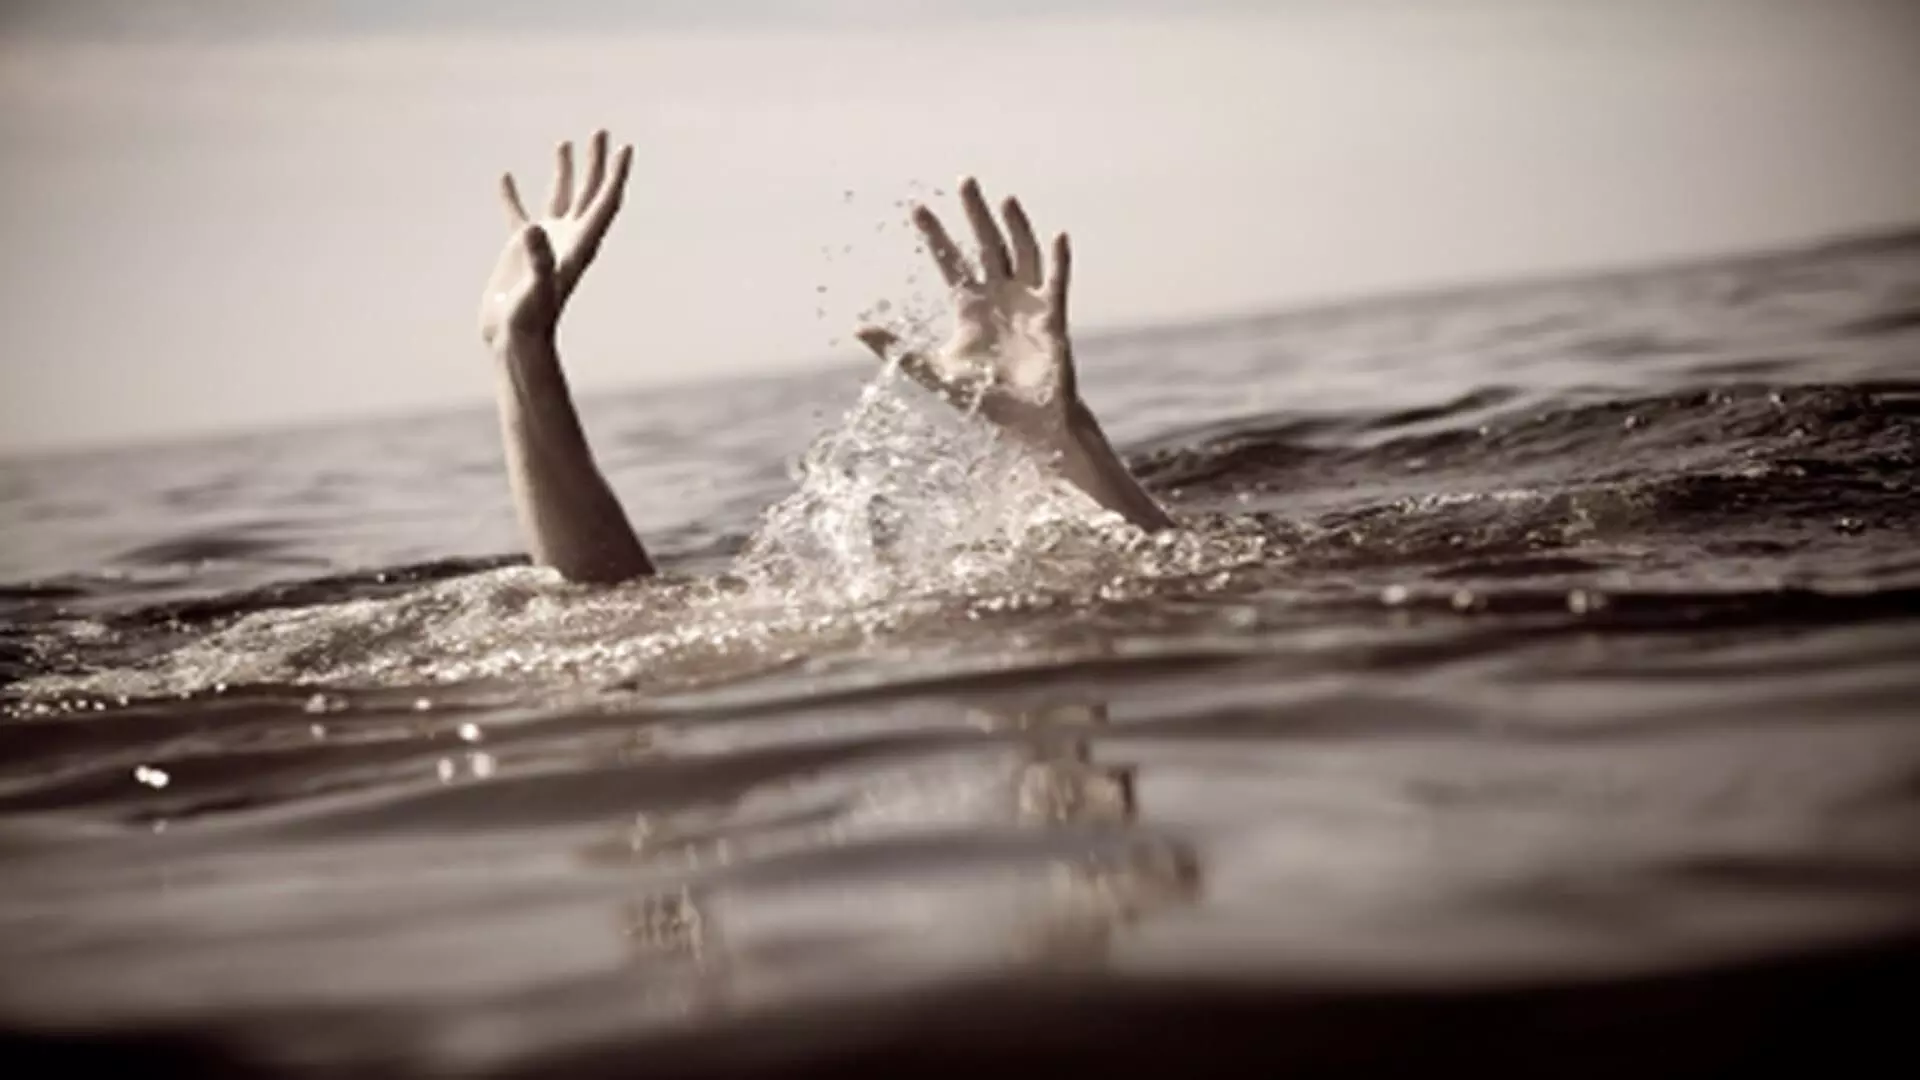 होली का जश्न मनाते हुए चार लोग नहर में डूबे, मौत